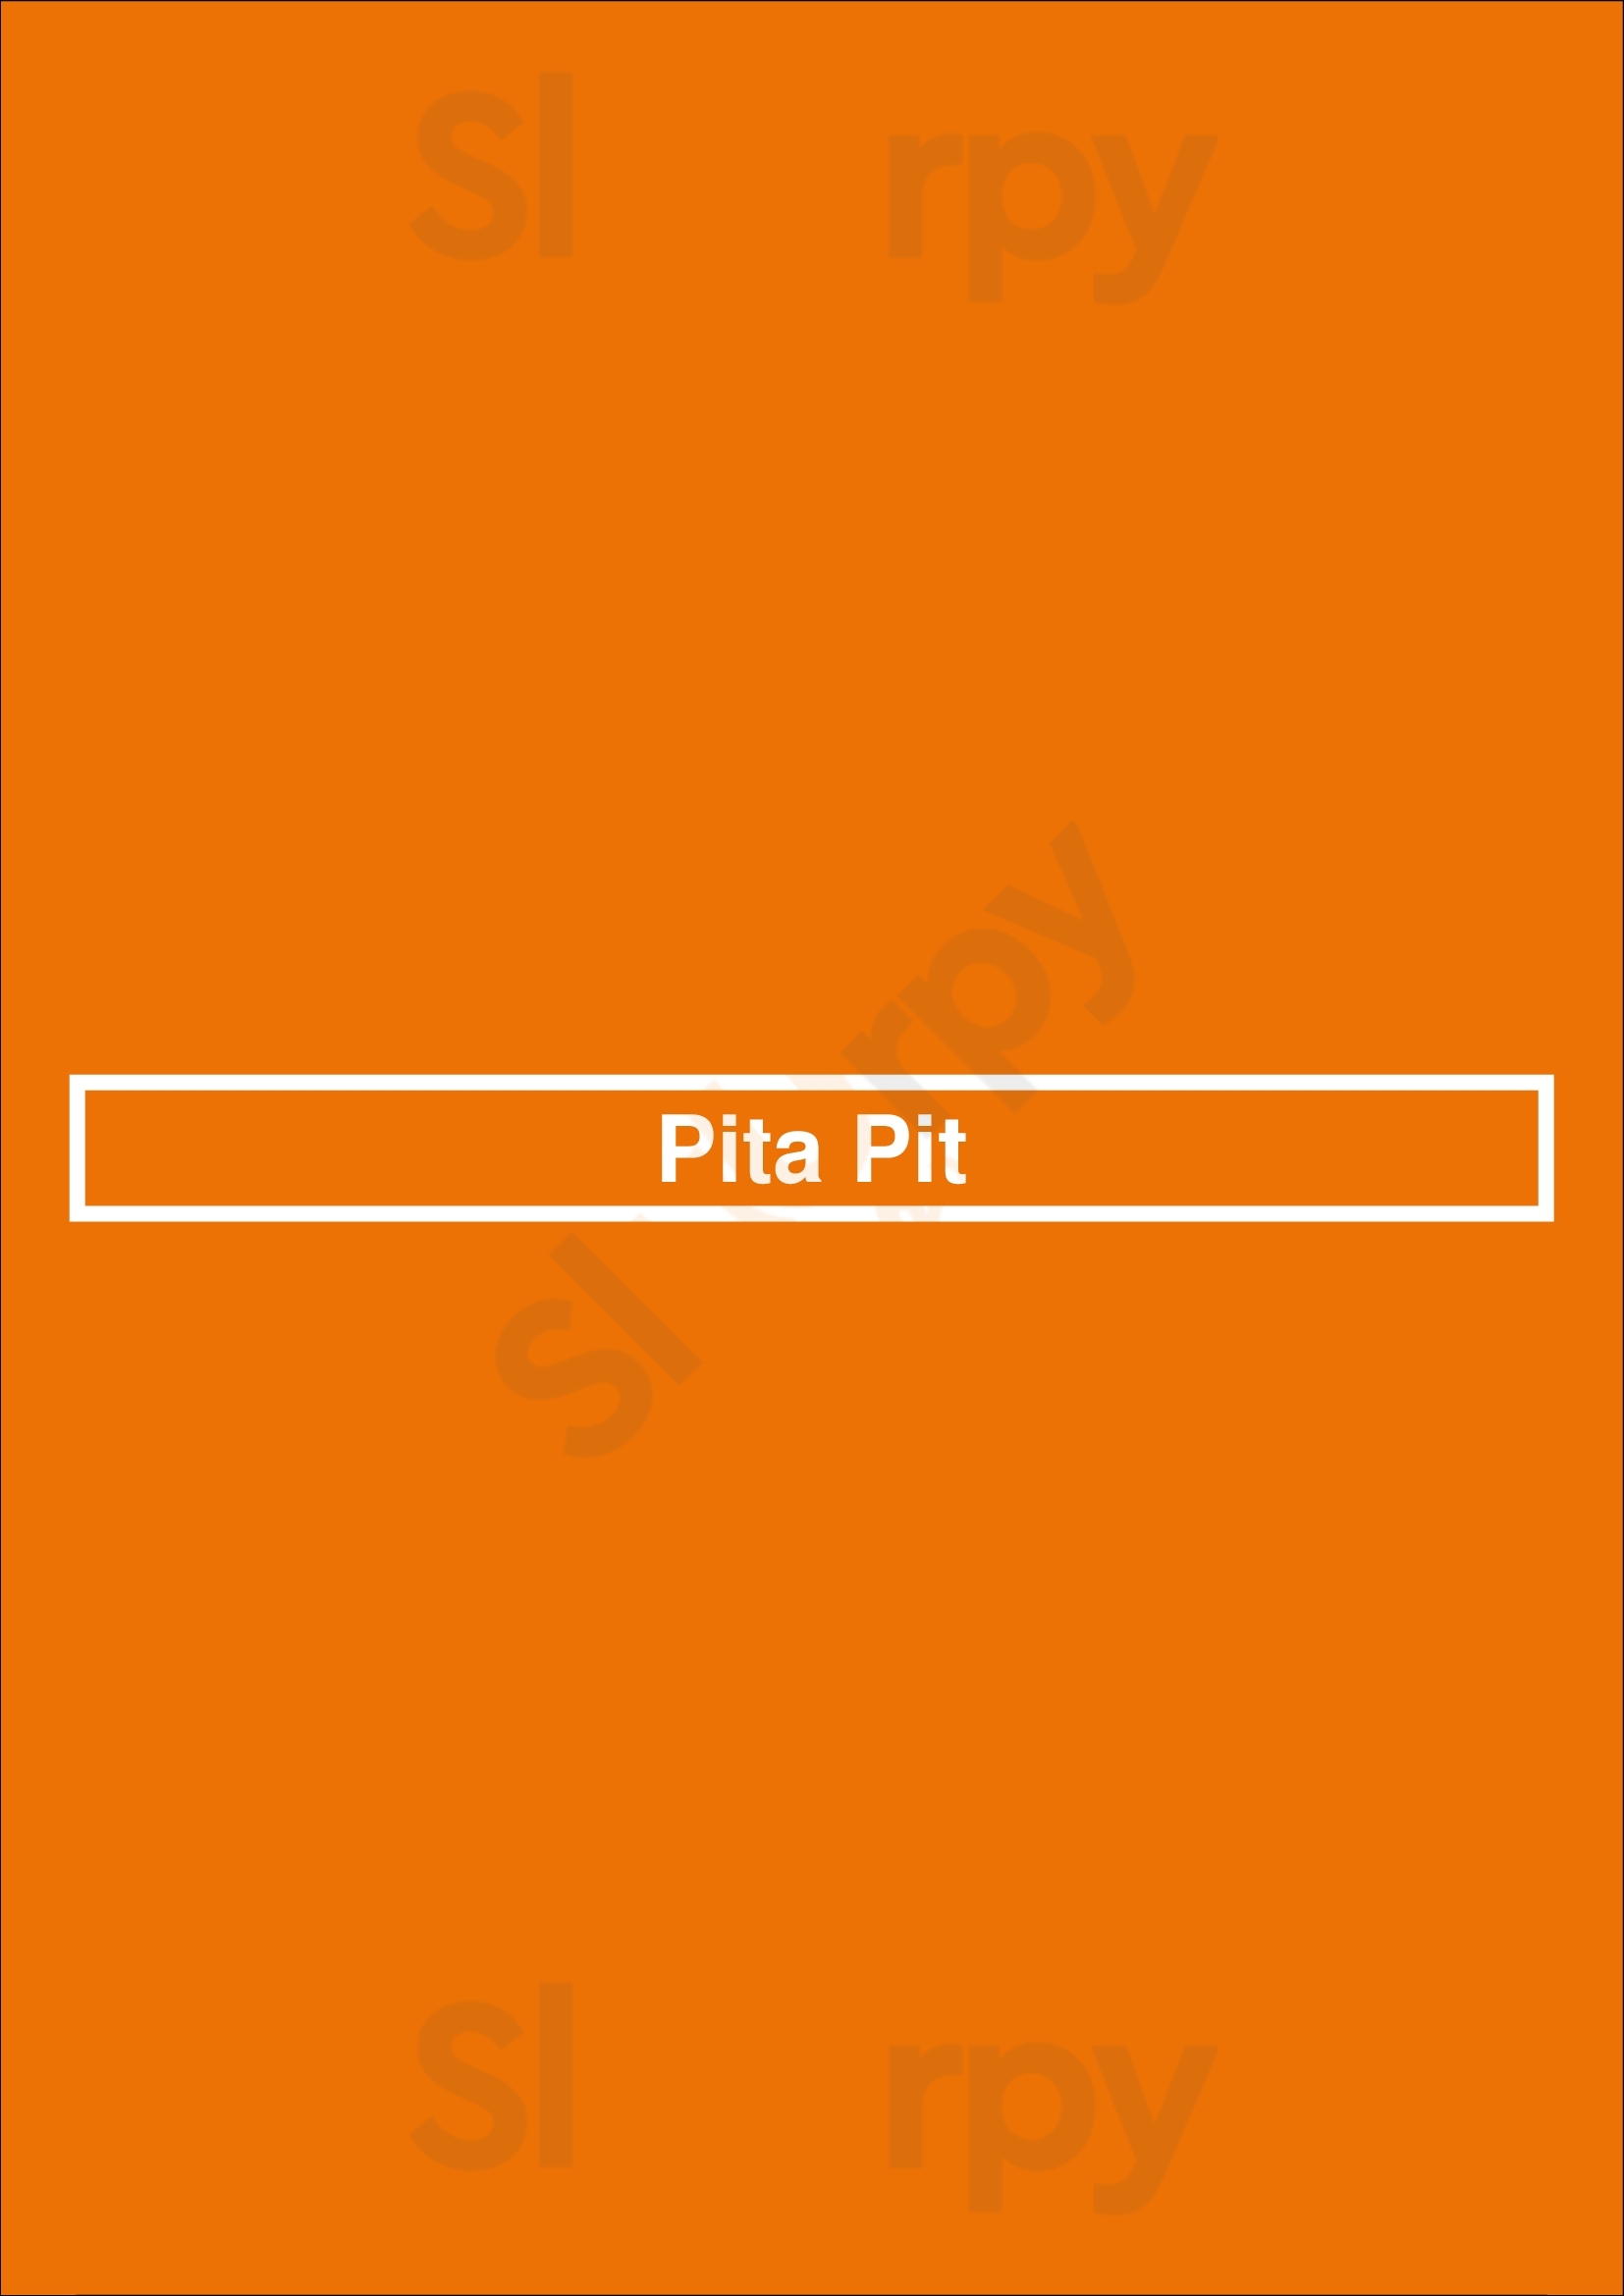 Pita Pit Louisville Menu - 1